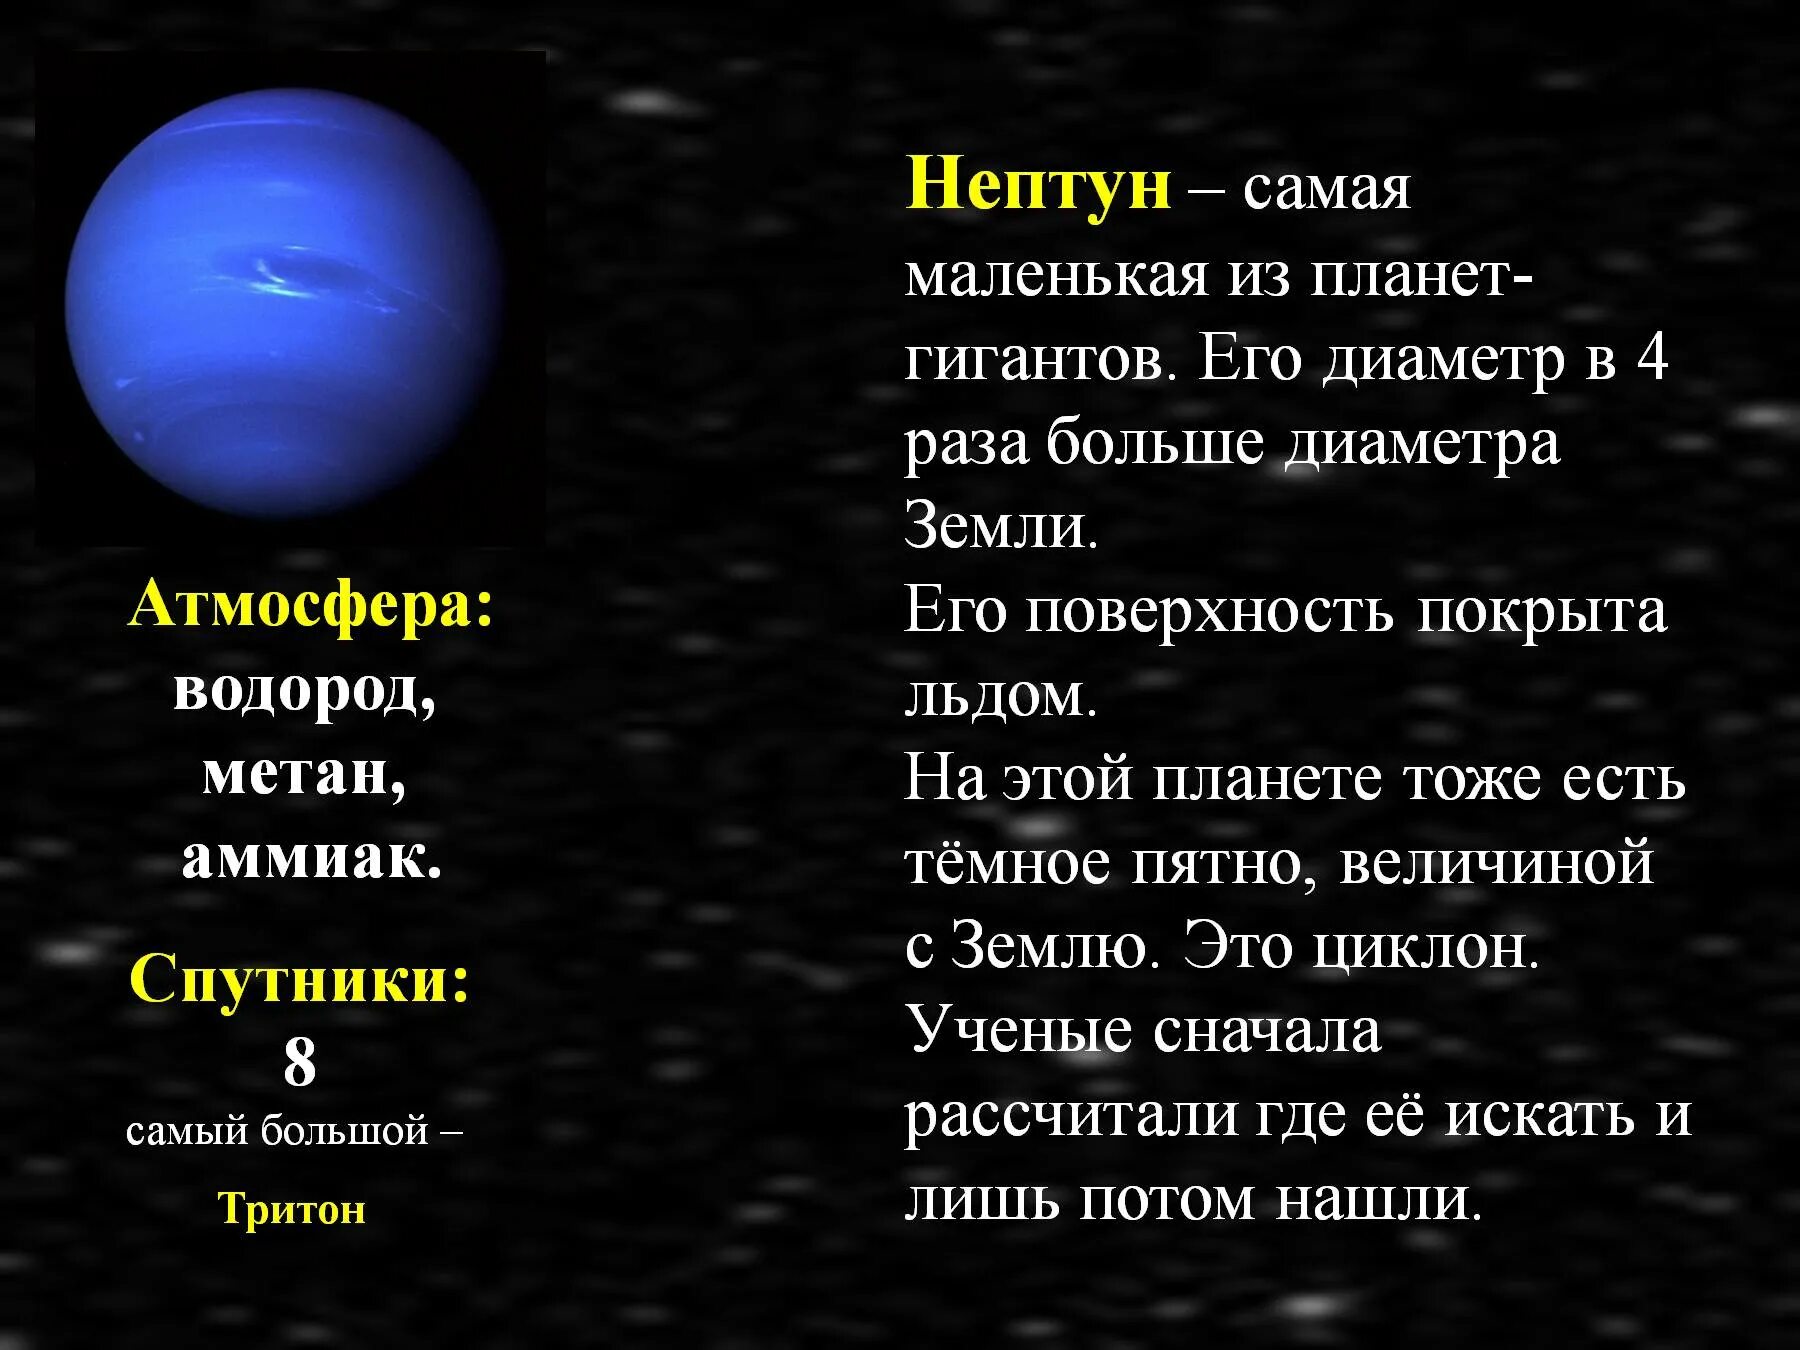 Планеты гиганты Юпитер Сатурн Уран Нептун. Нептун Планета спутники Тритон. Планеты гиганты солнечной системы Нептун. Нептун самая маленькая Планета гигант солнечной. Юпитер больше нептуна